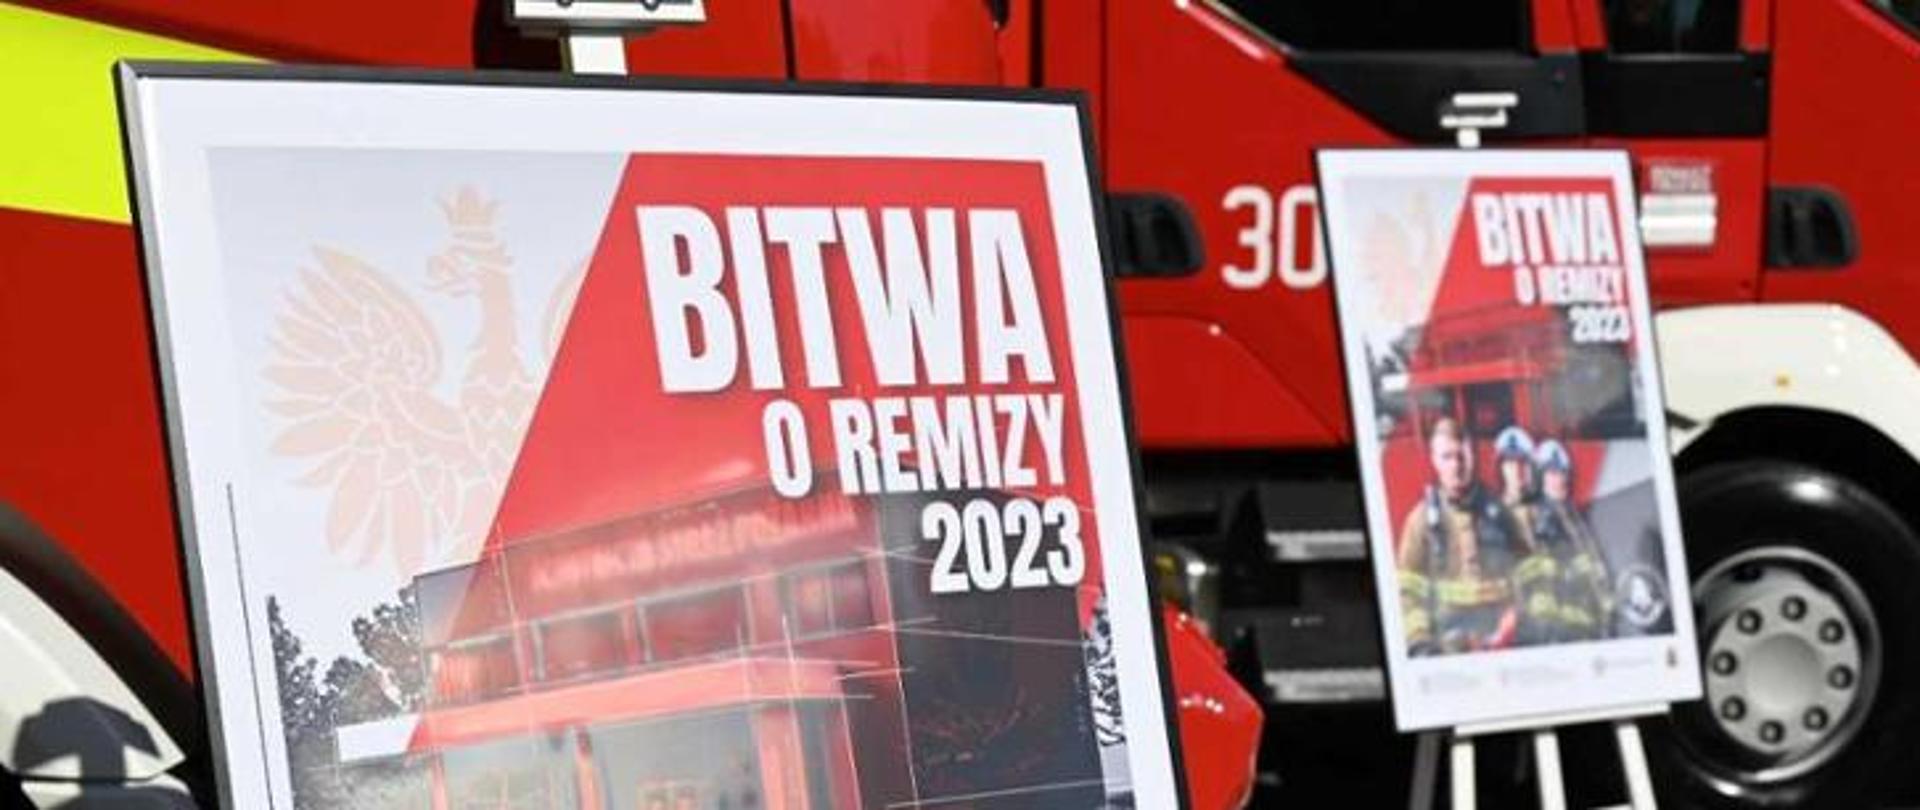 Dwa plakaty promocyjne akcji Bitwa o Remizy 2023 na tle dwóch pojazdów pożarniczych. Na plakatach widnieje napis: „Bitwa o remizy 2023”.